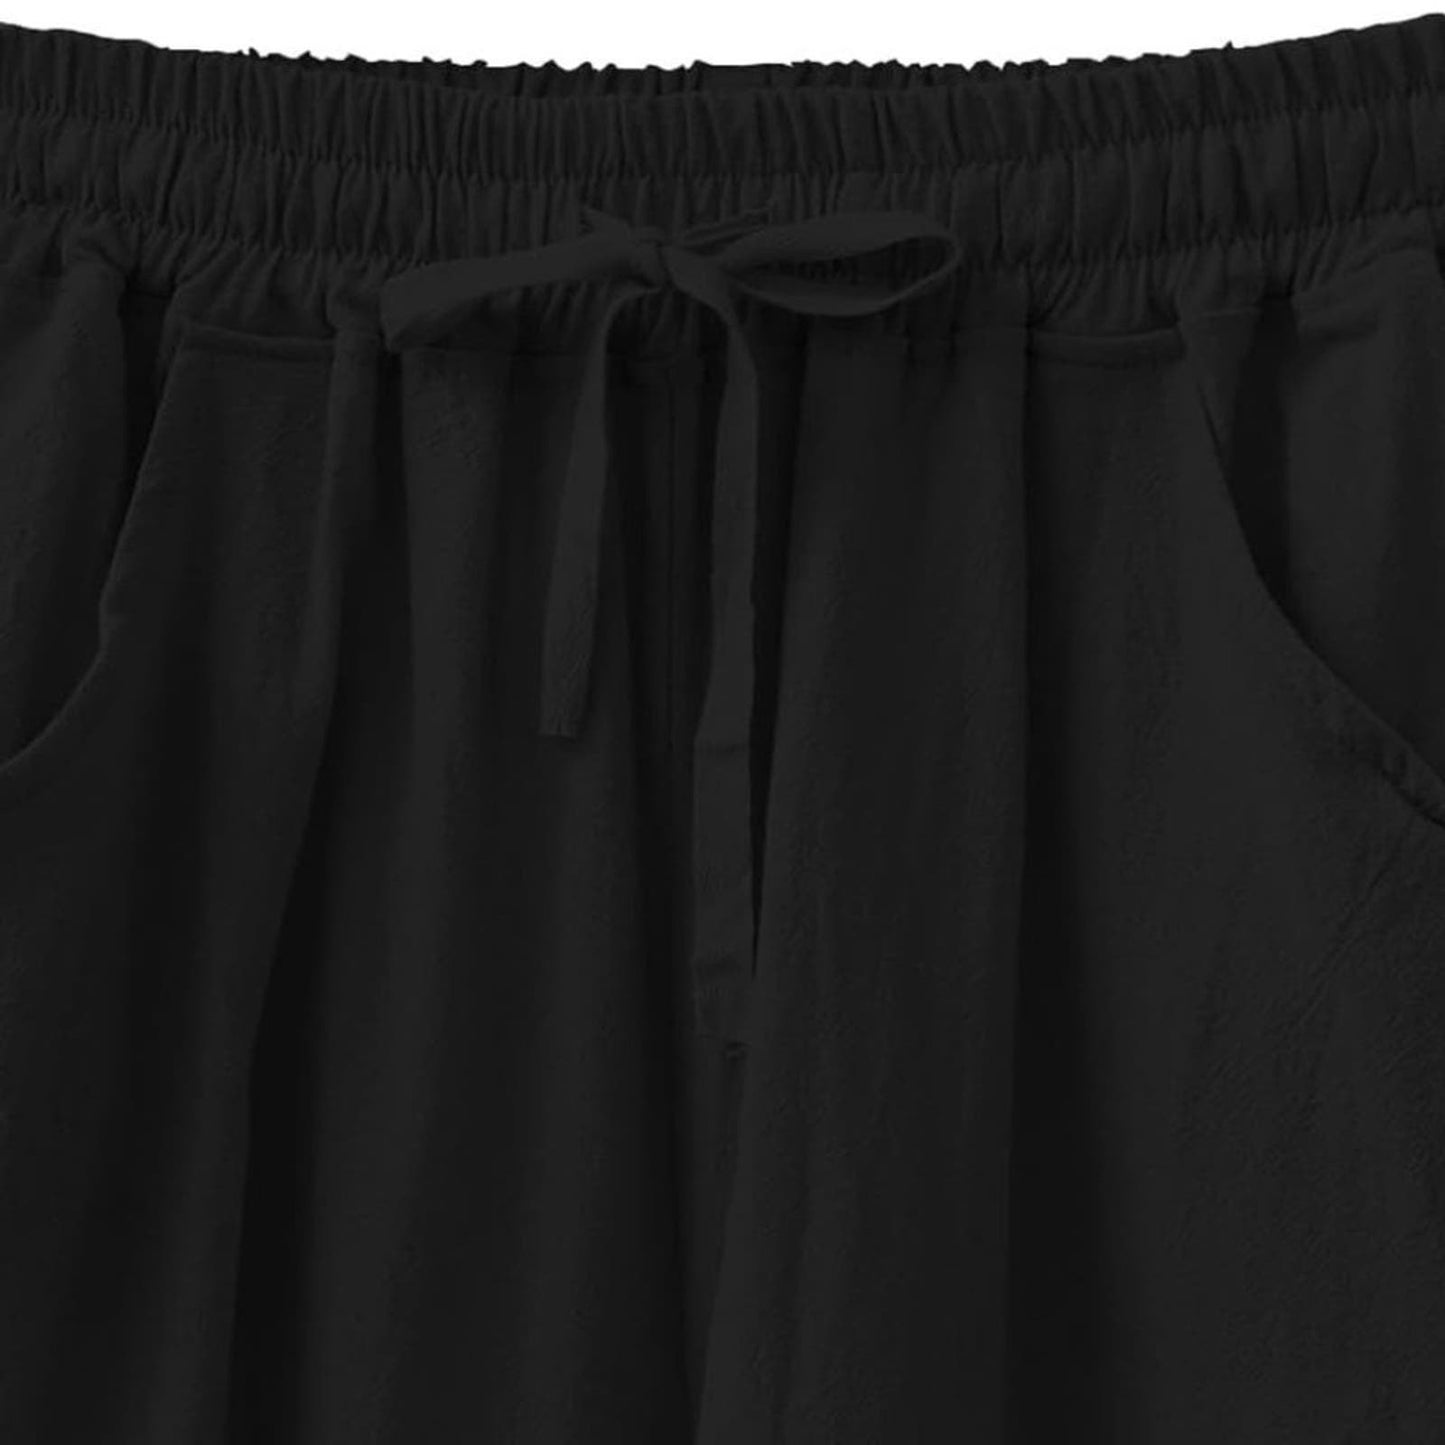 LG Women Wide Leg Linen Pants, High Waisted Summer Casual Cotton Linen Palazzo